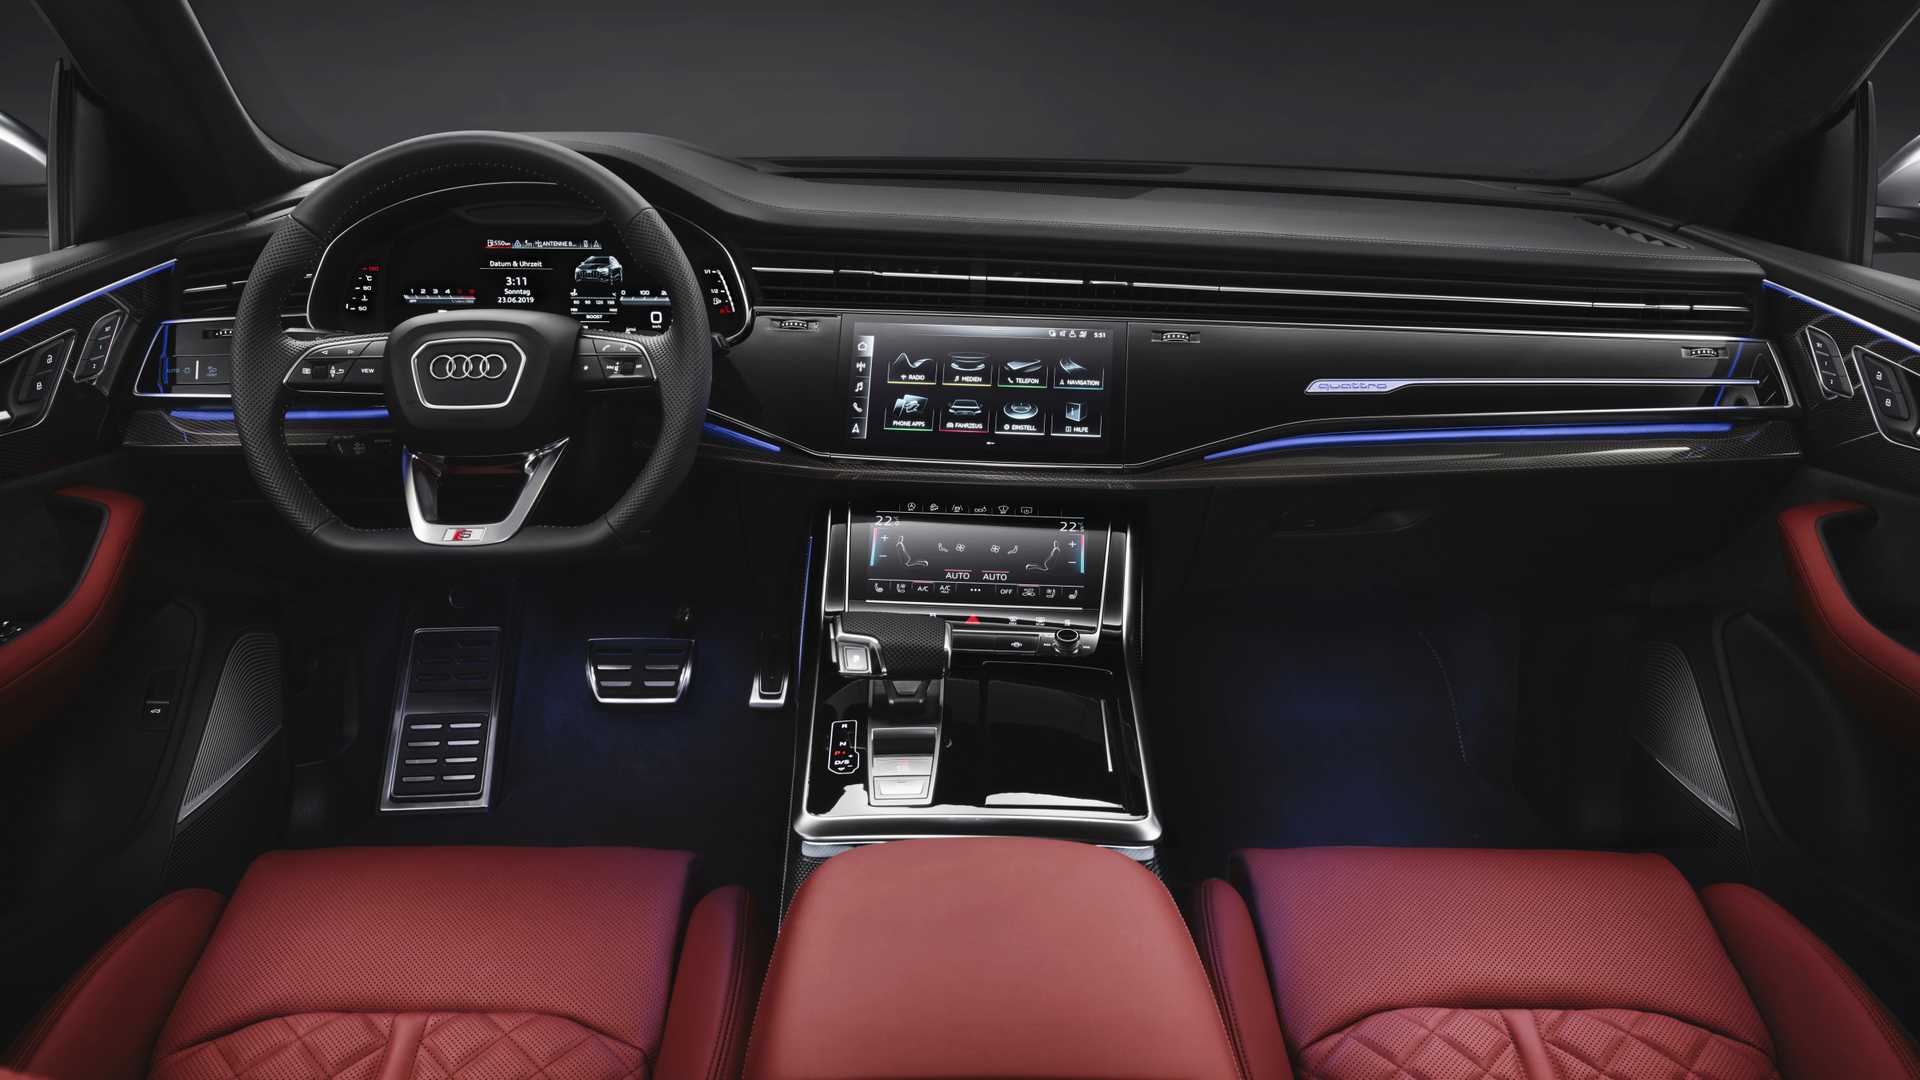 2019 Audi SQ8, 435 beygirlik hafif hibrit motoruyla tanıtıldı